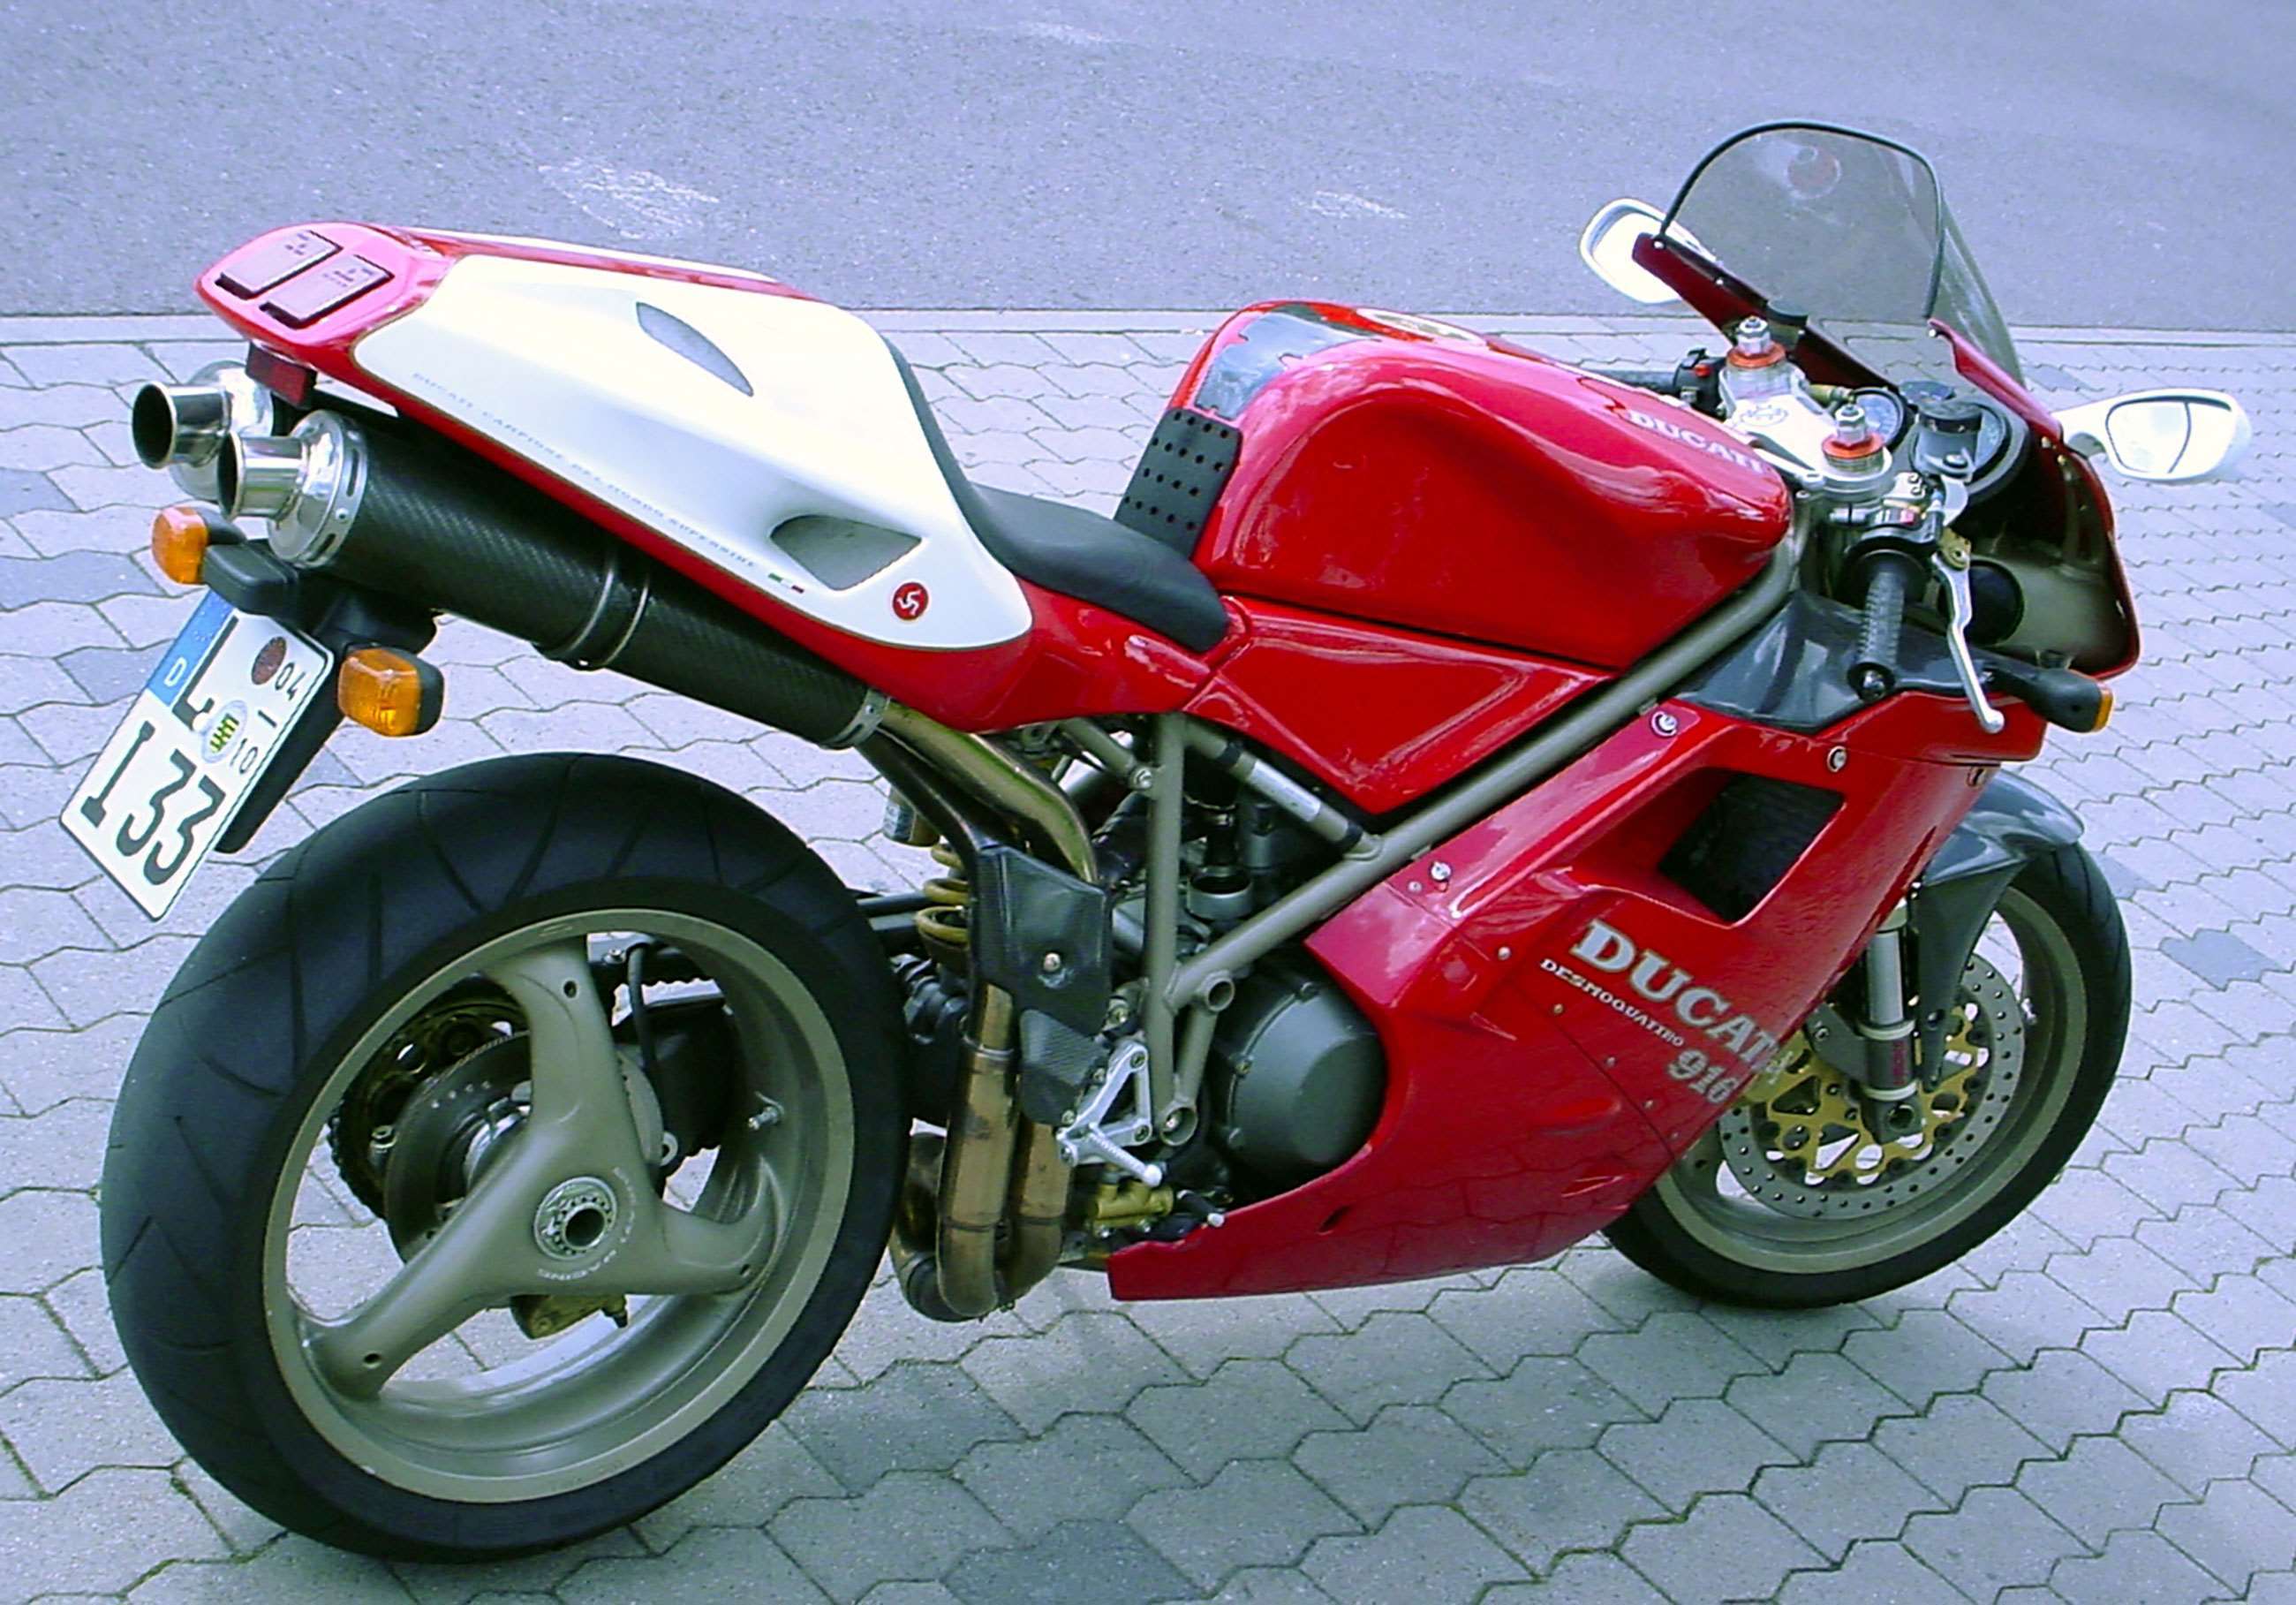 best-bikes-of-the-nineties-5-ducati-916-deko4you-goodwood-07052020.jpg